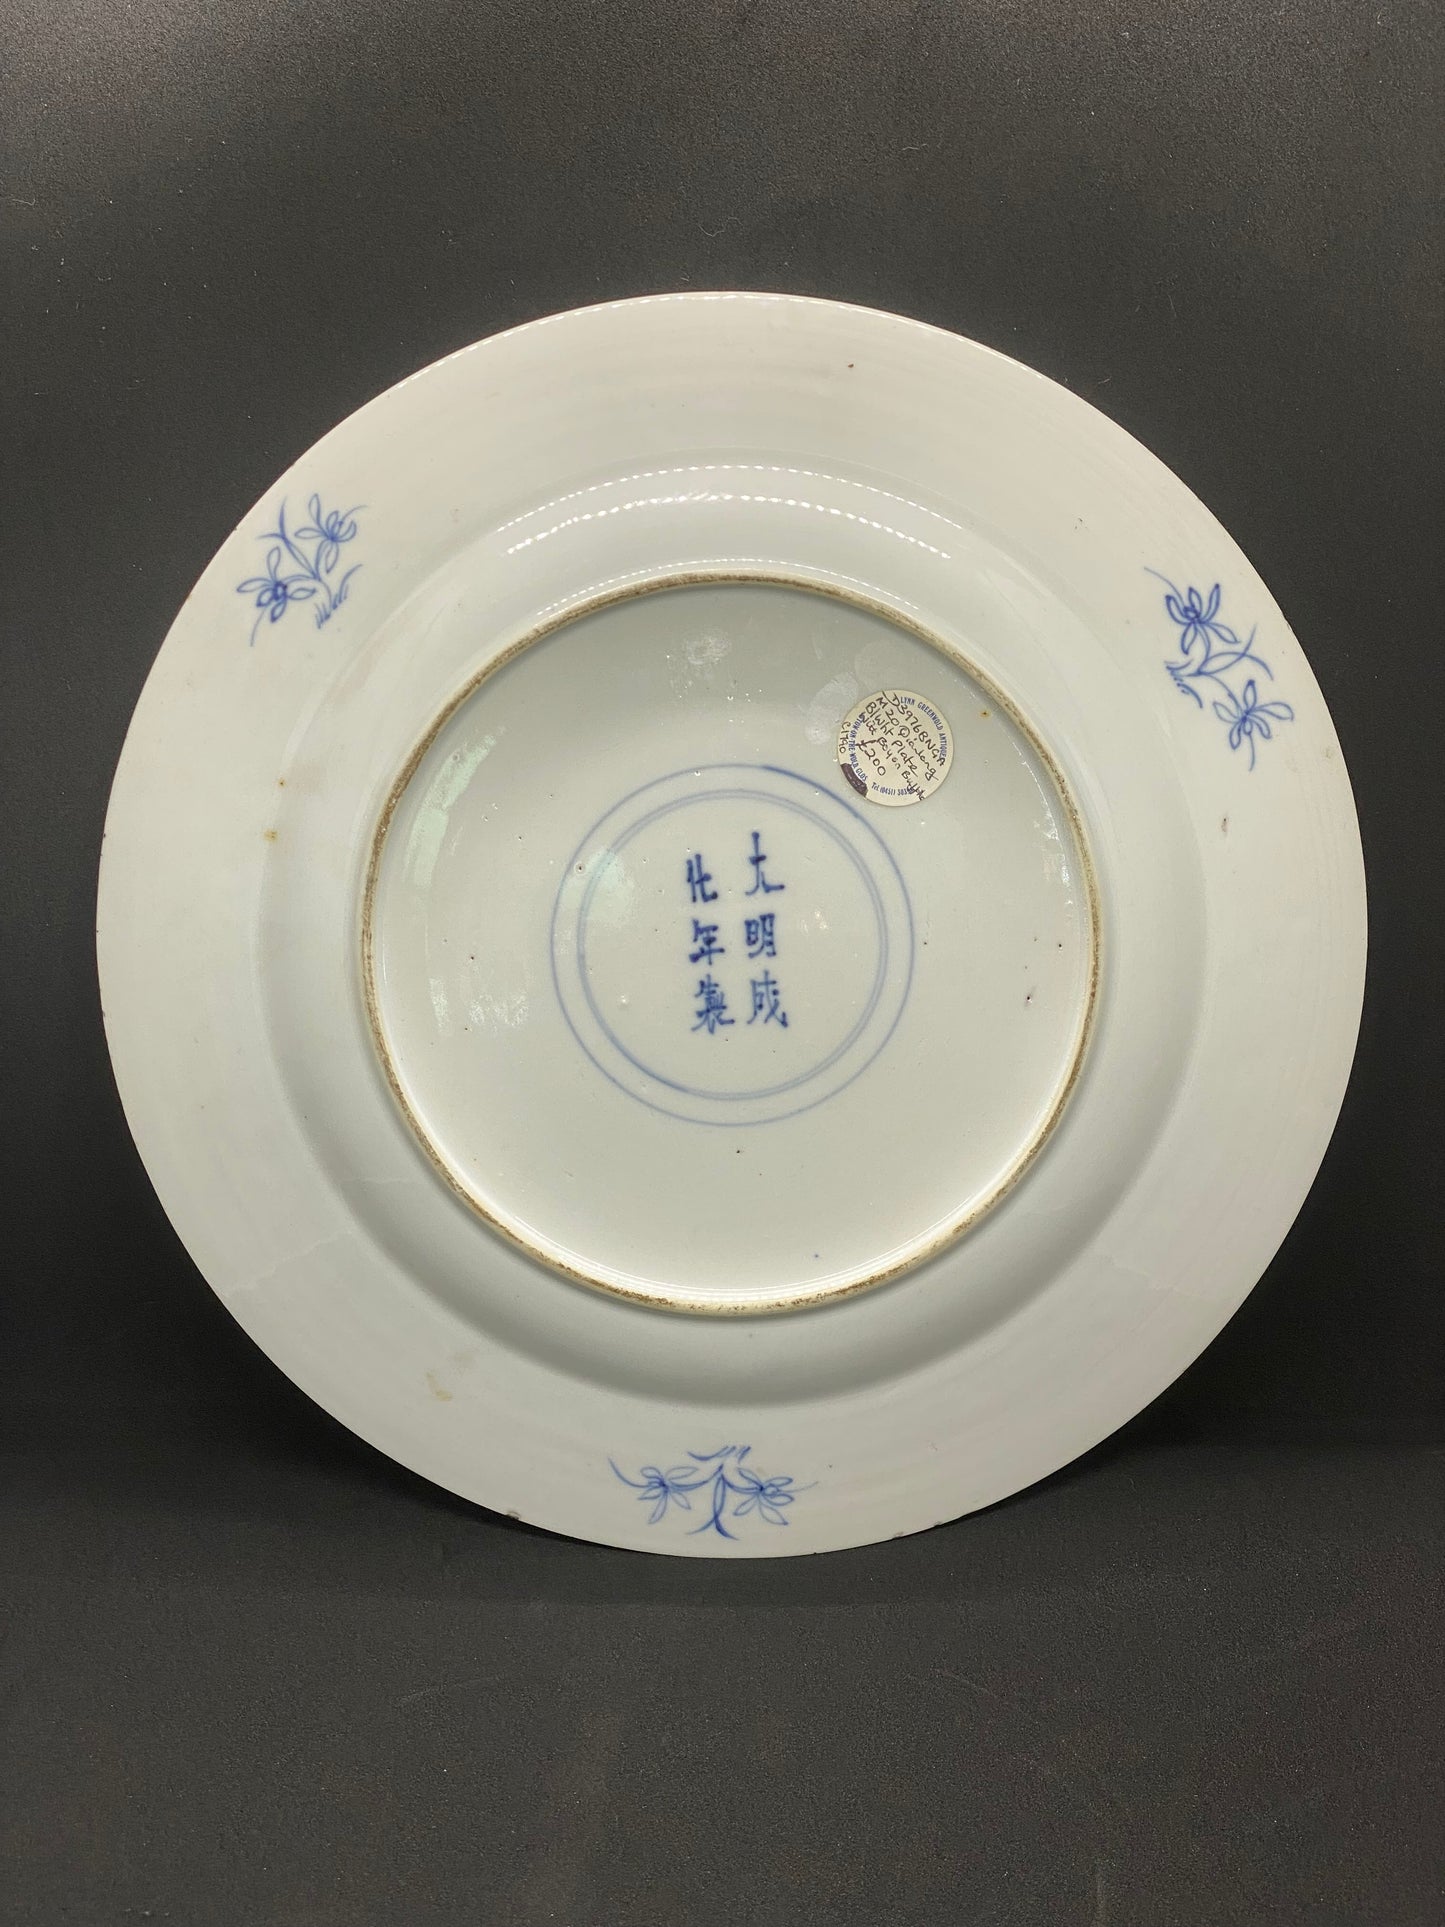 令人惊叹且罕见的 17 至 18 世纪清瓷盘，带有伪明代标记